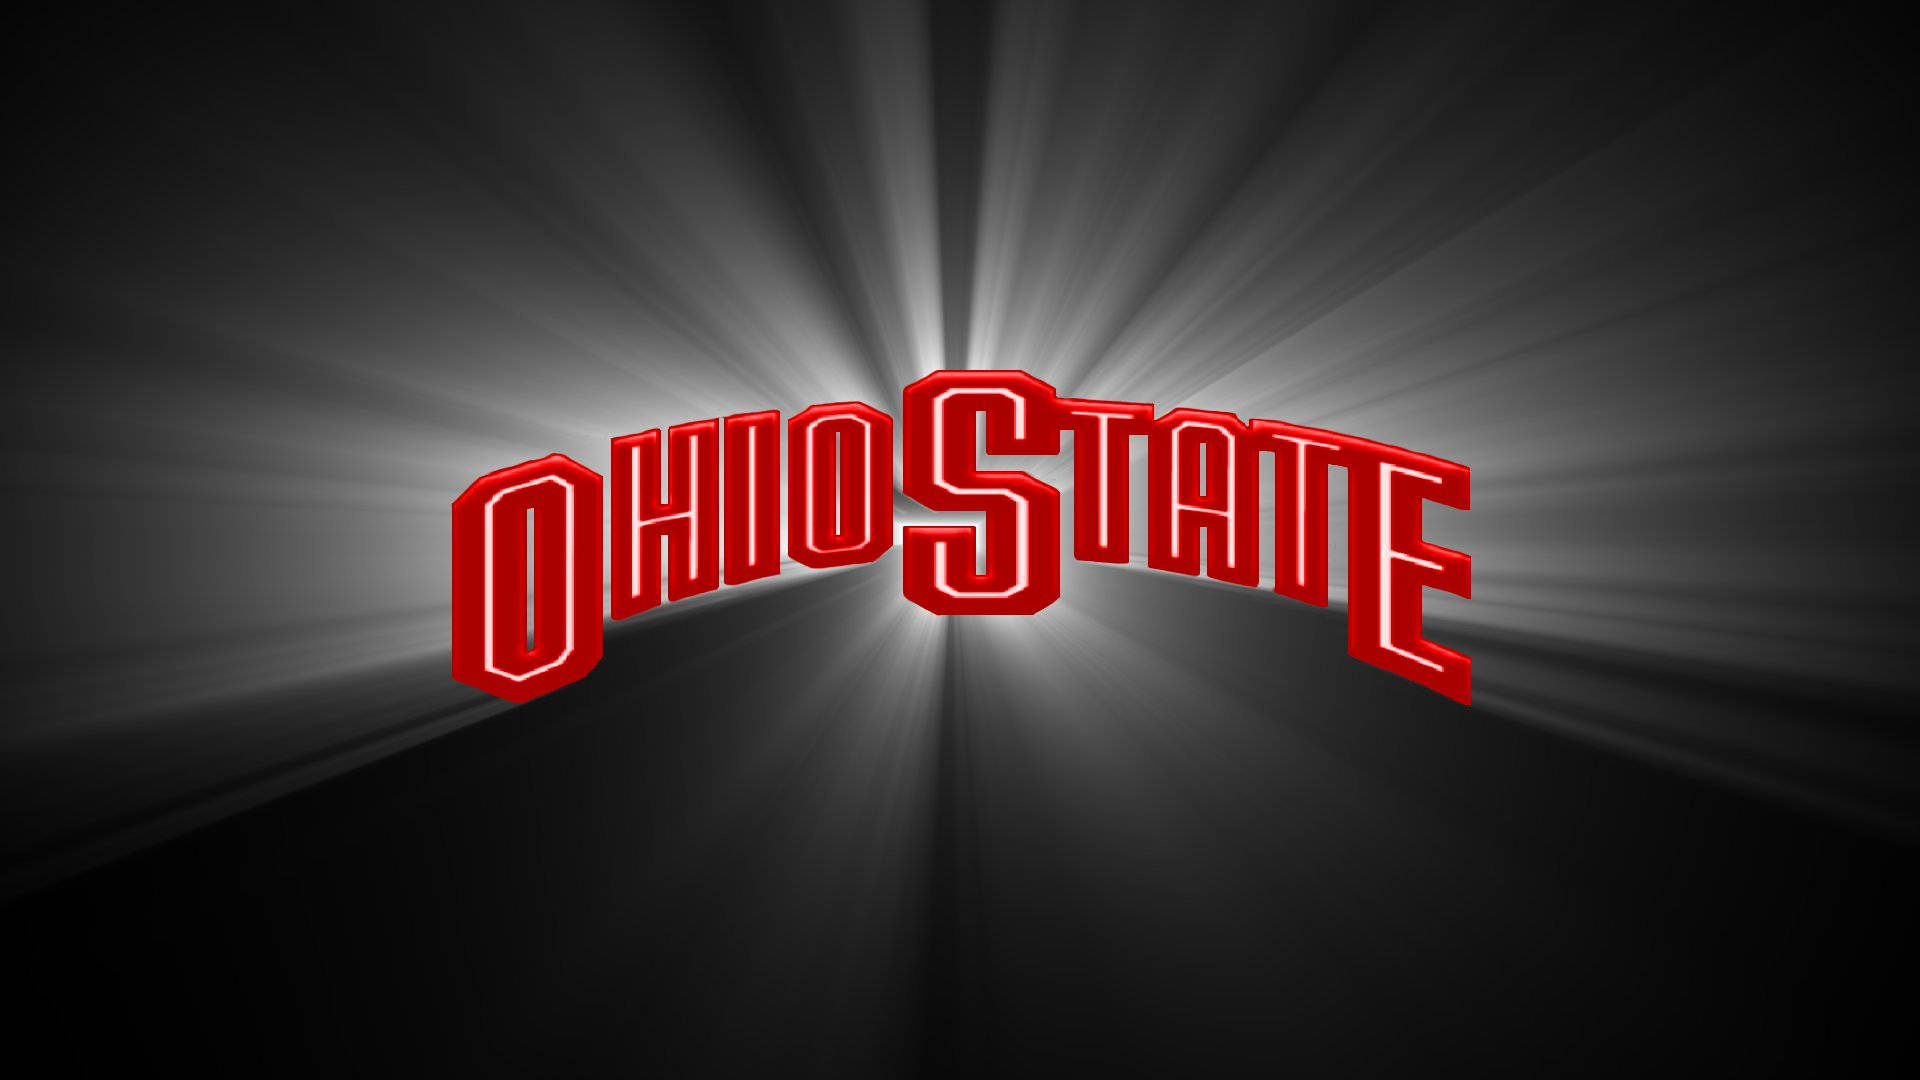 Ohio State University Shining Logo Picture